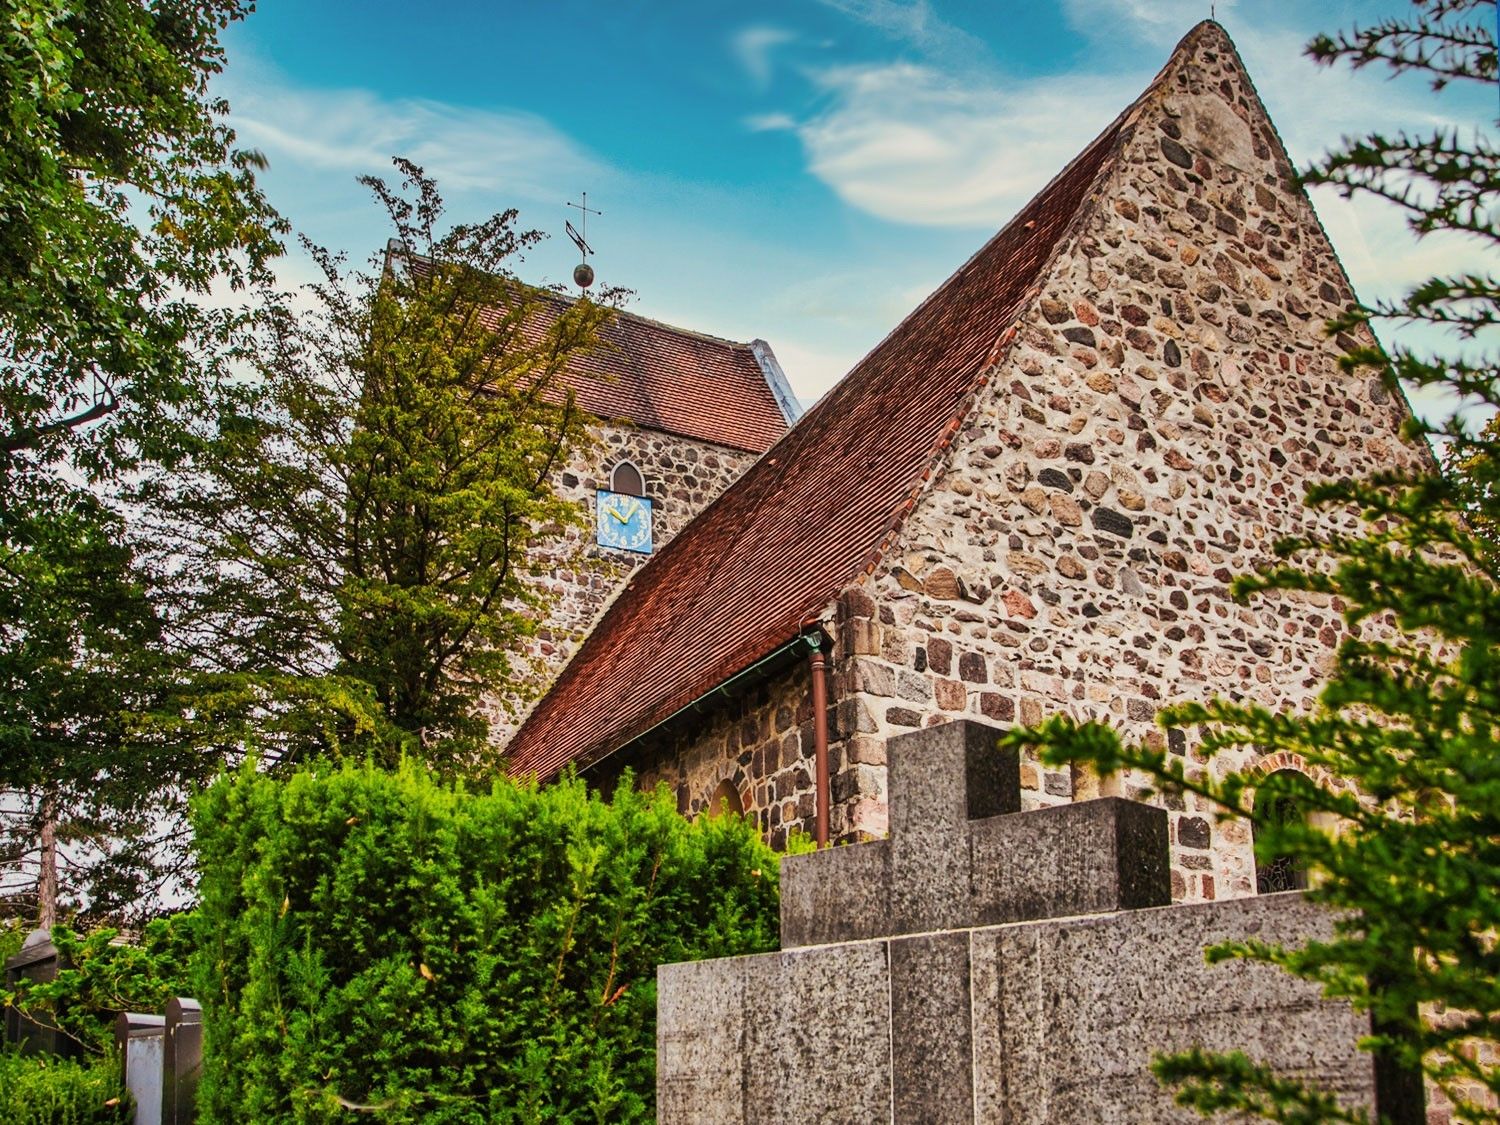 alte Dorfkirche in Buckow. Die Kirche besteht aus Feldsteinen in grau/braun mit einem roten Dach. Rechts und links von der Kirche Bäume und Sträucher.